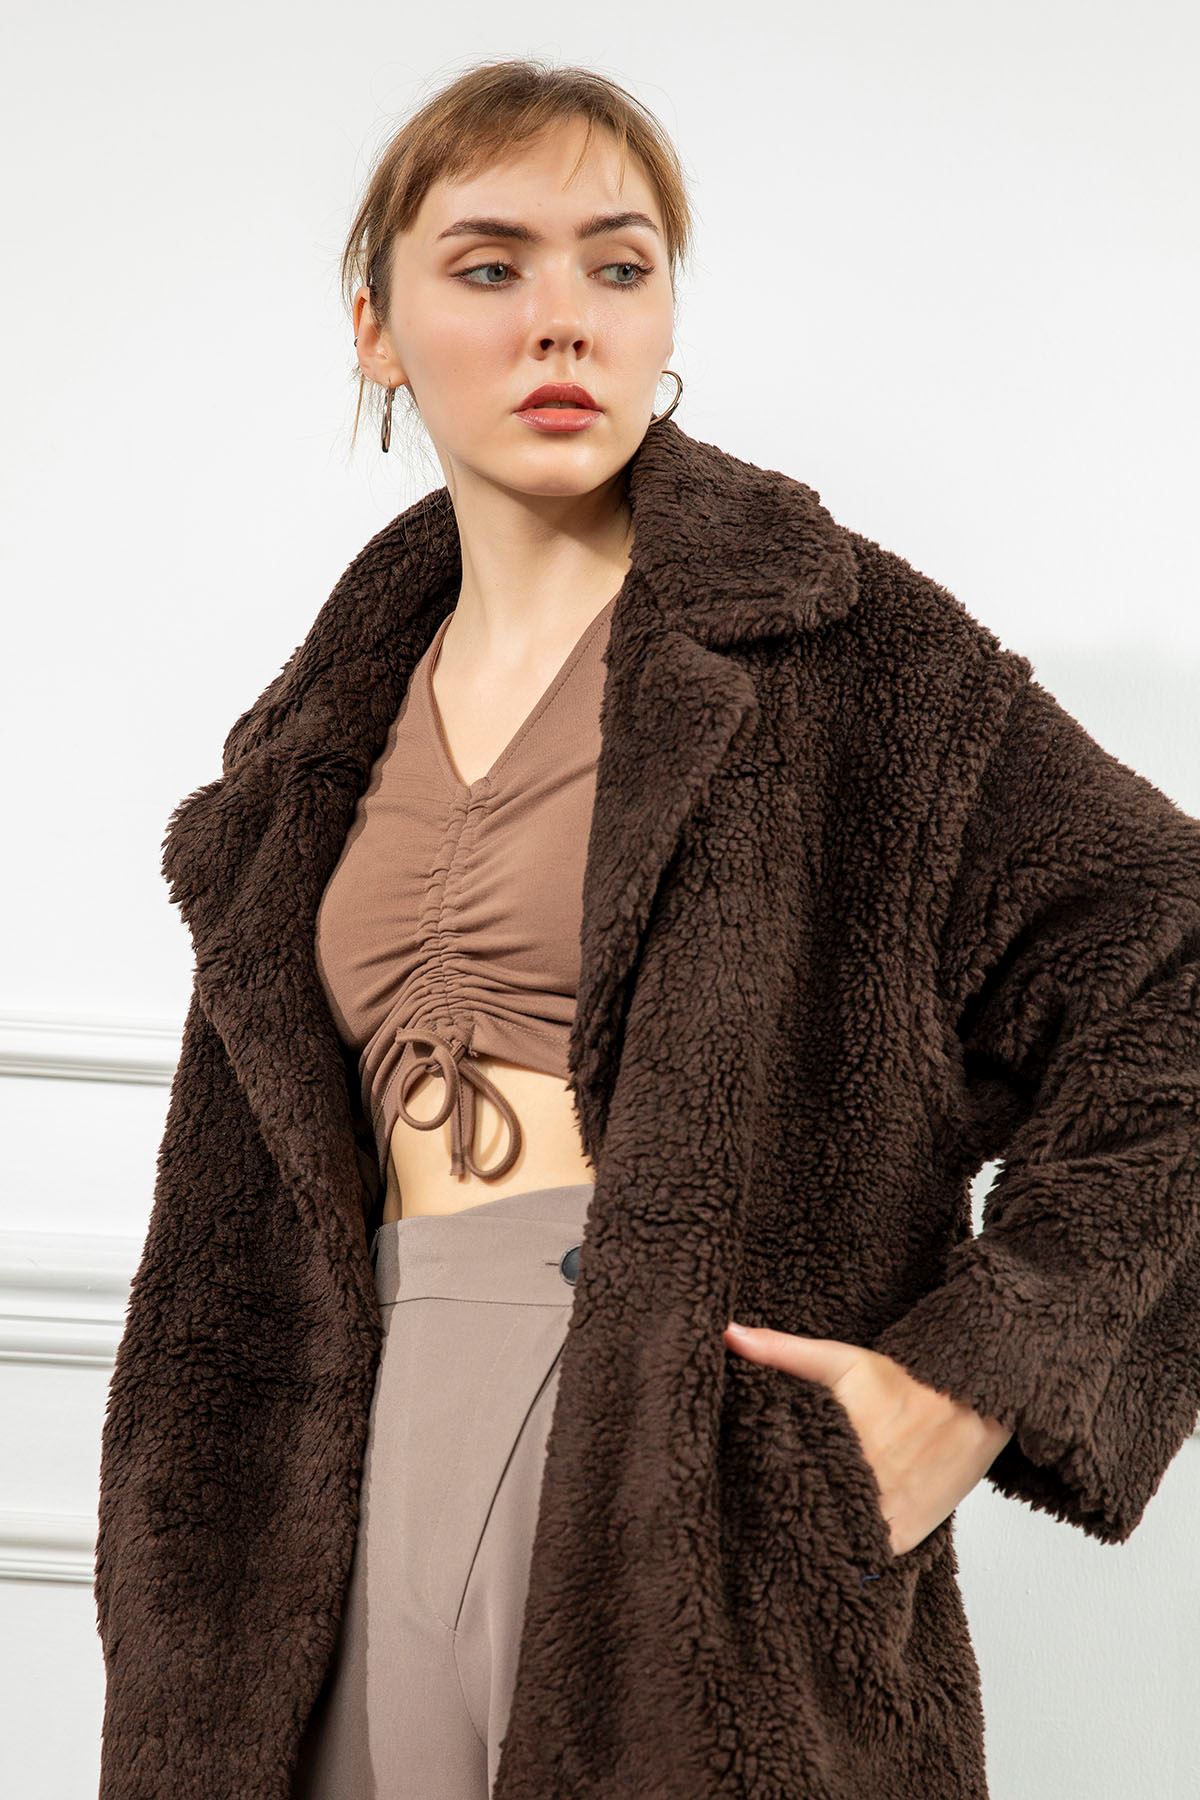  Long Sleeve Revere Collar Below Knee Oversize Women Coat-Brown